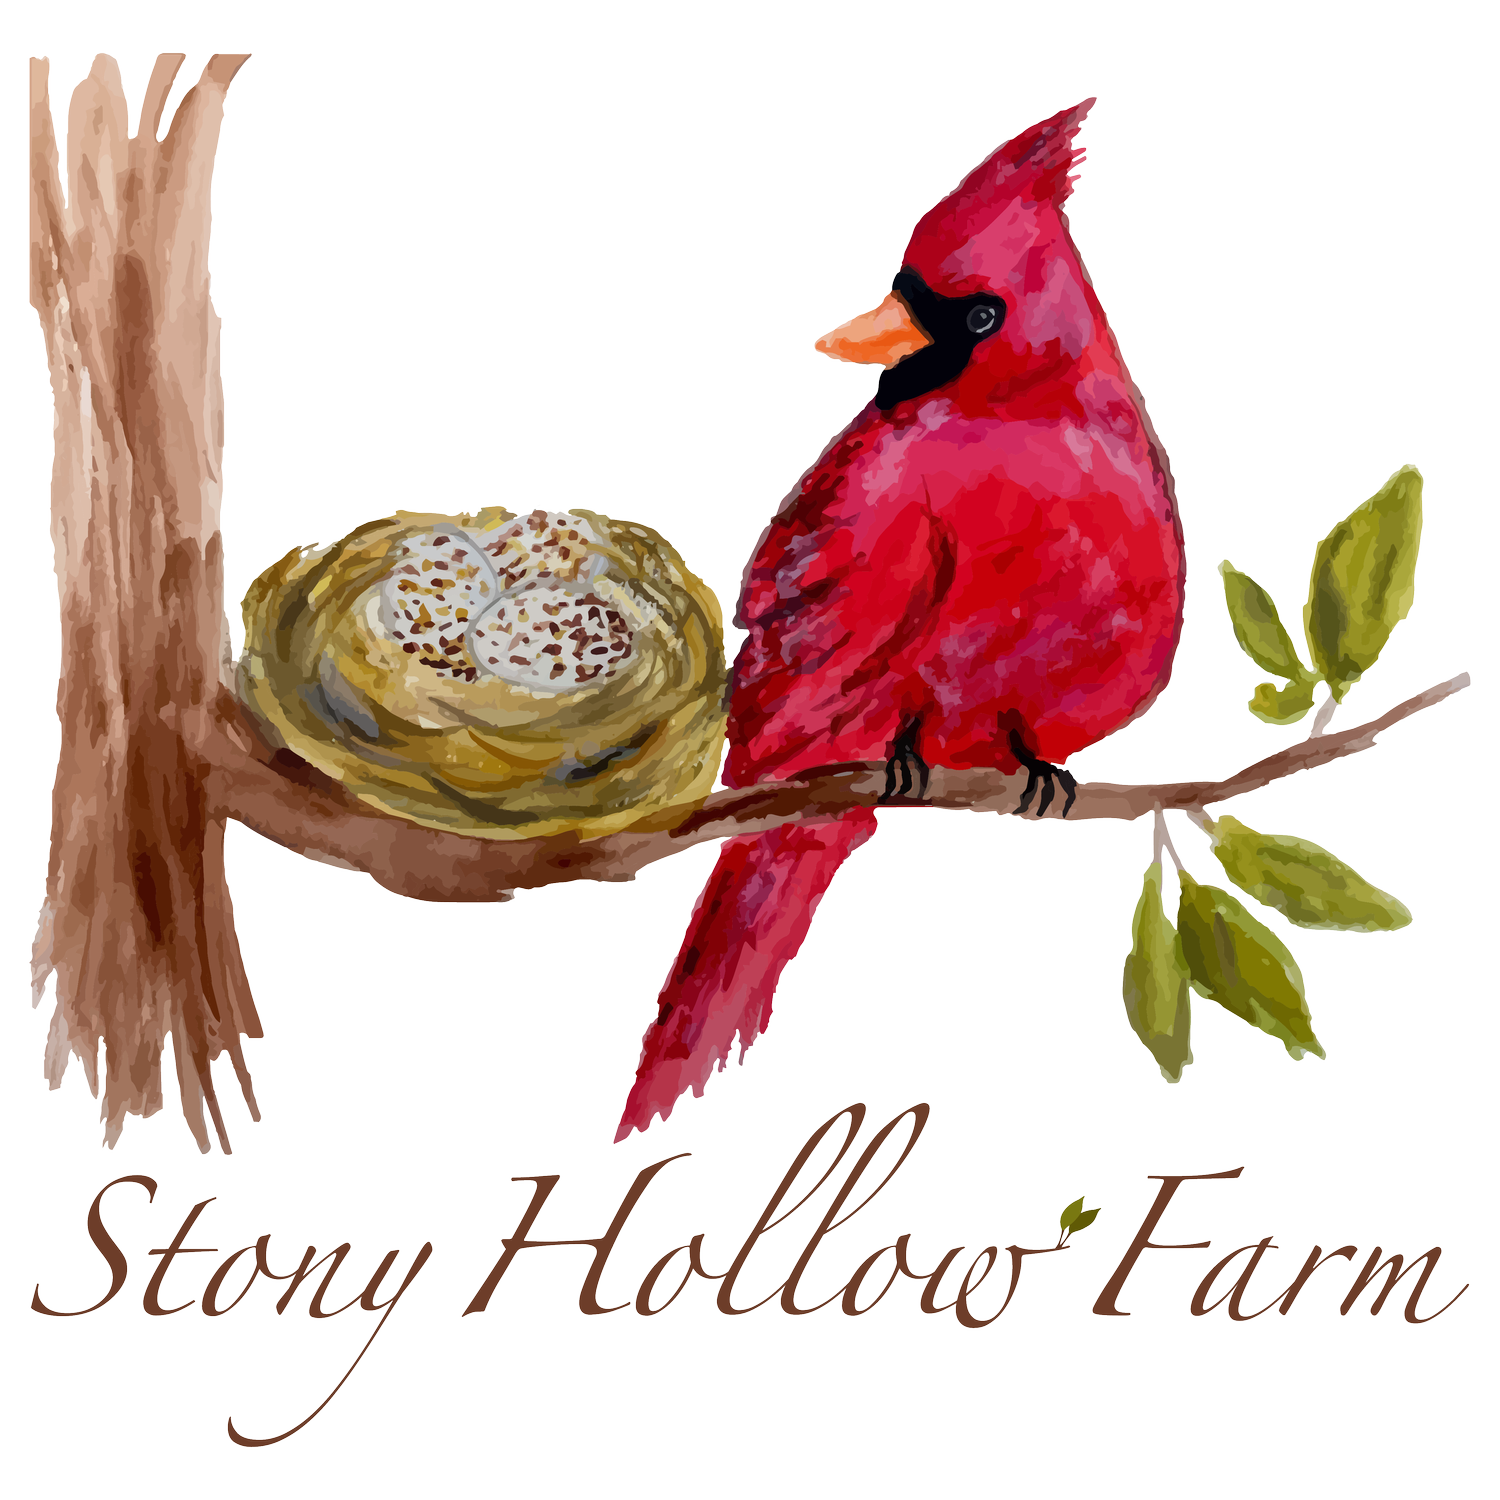 STONY HOLLOW FARM